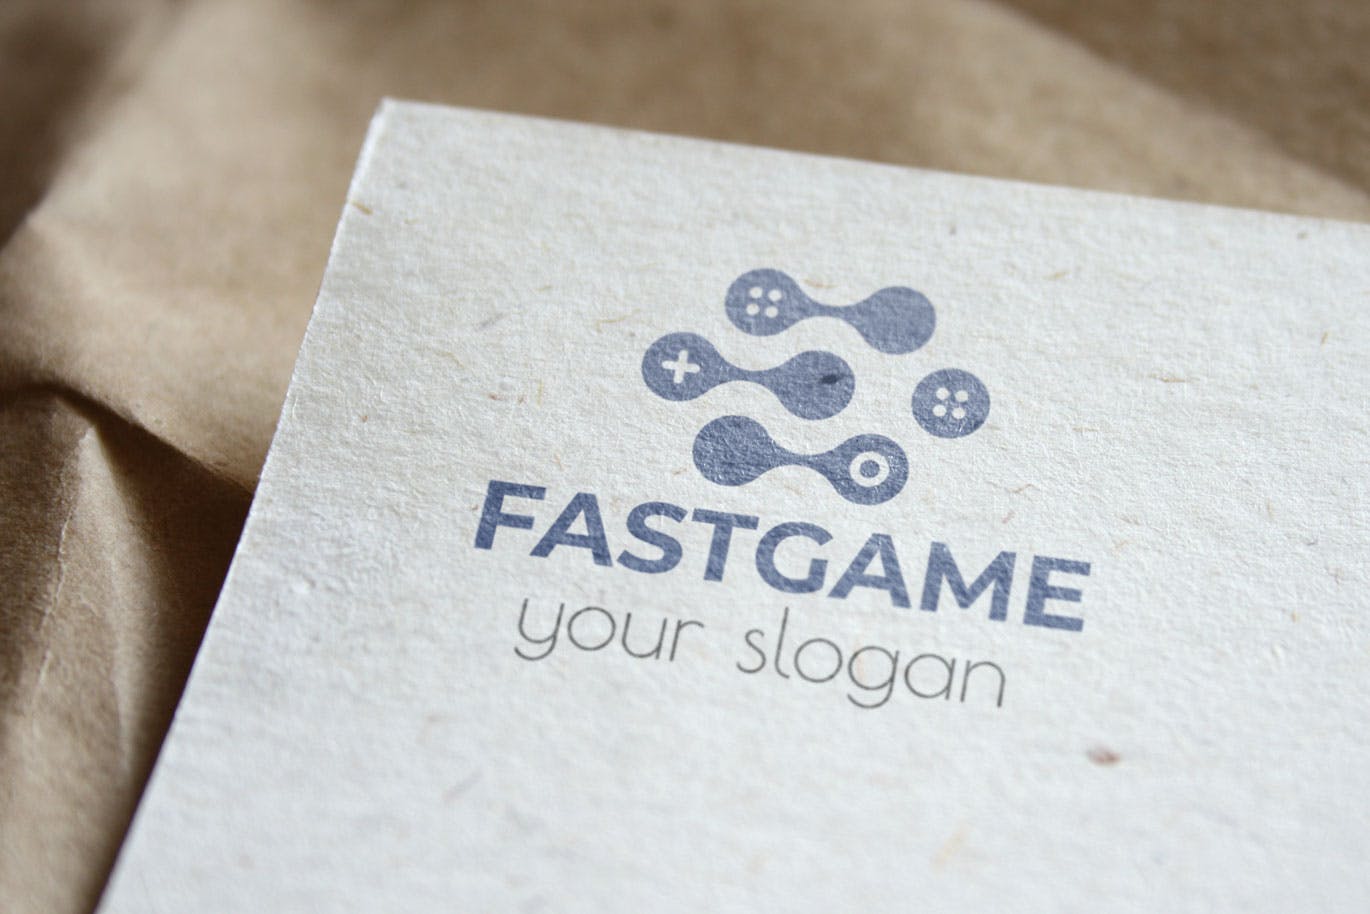 游戏加速器Logo设计蚂蚁素材精选模板 Fast Game Business Logo Template插图(3)